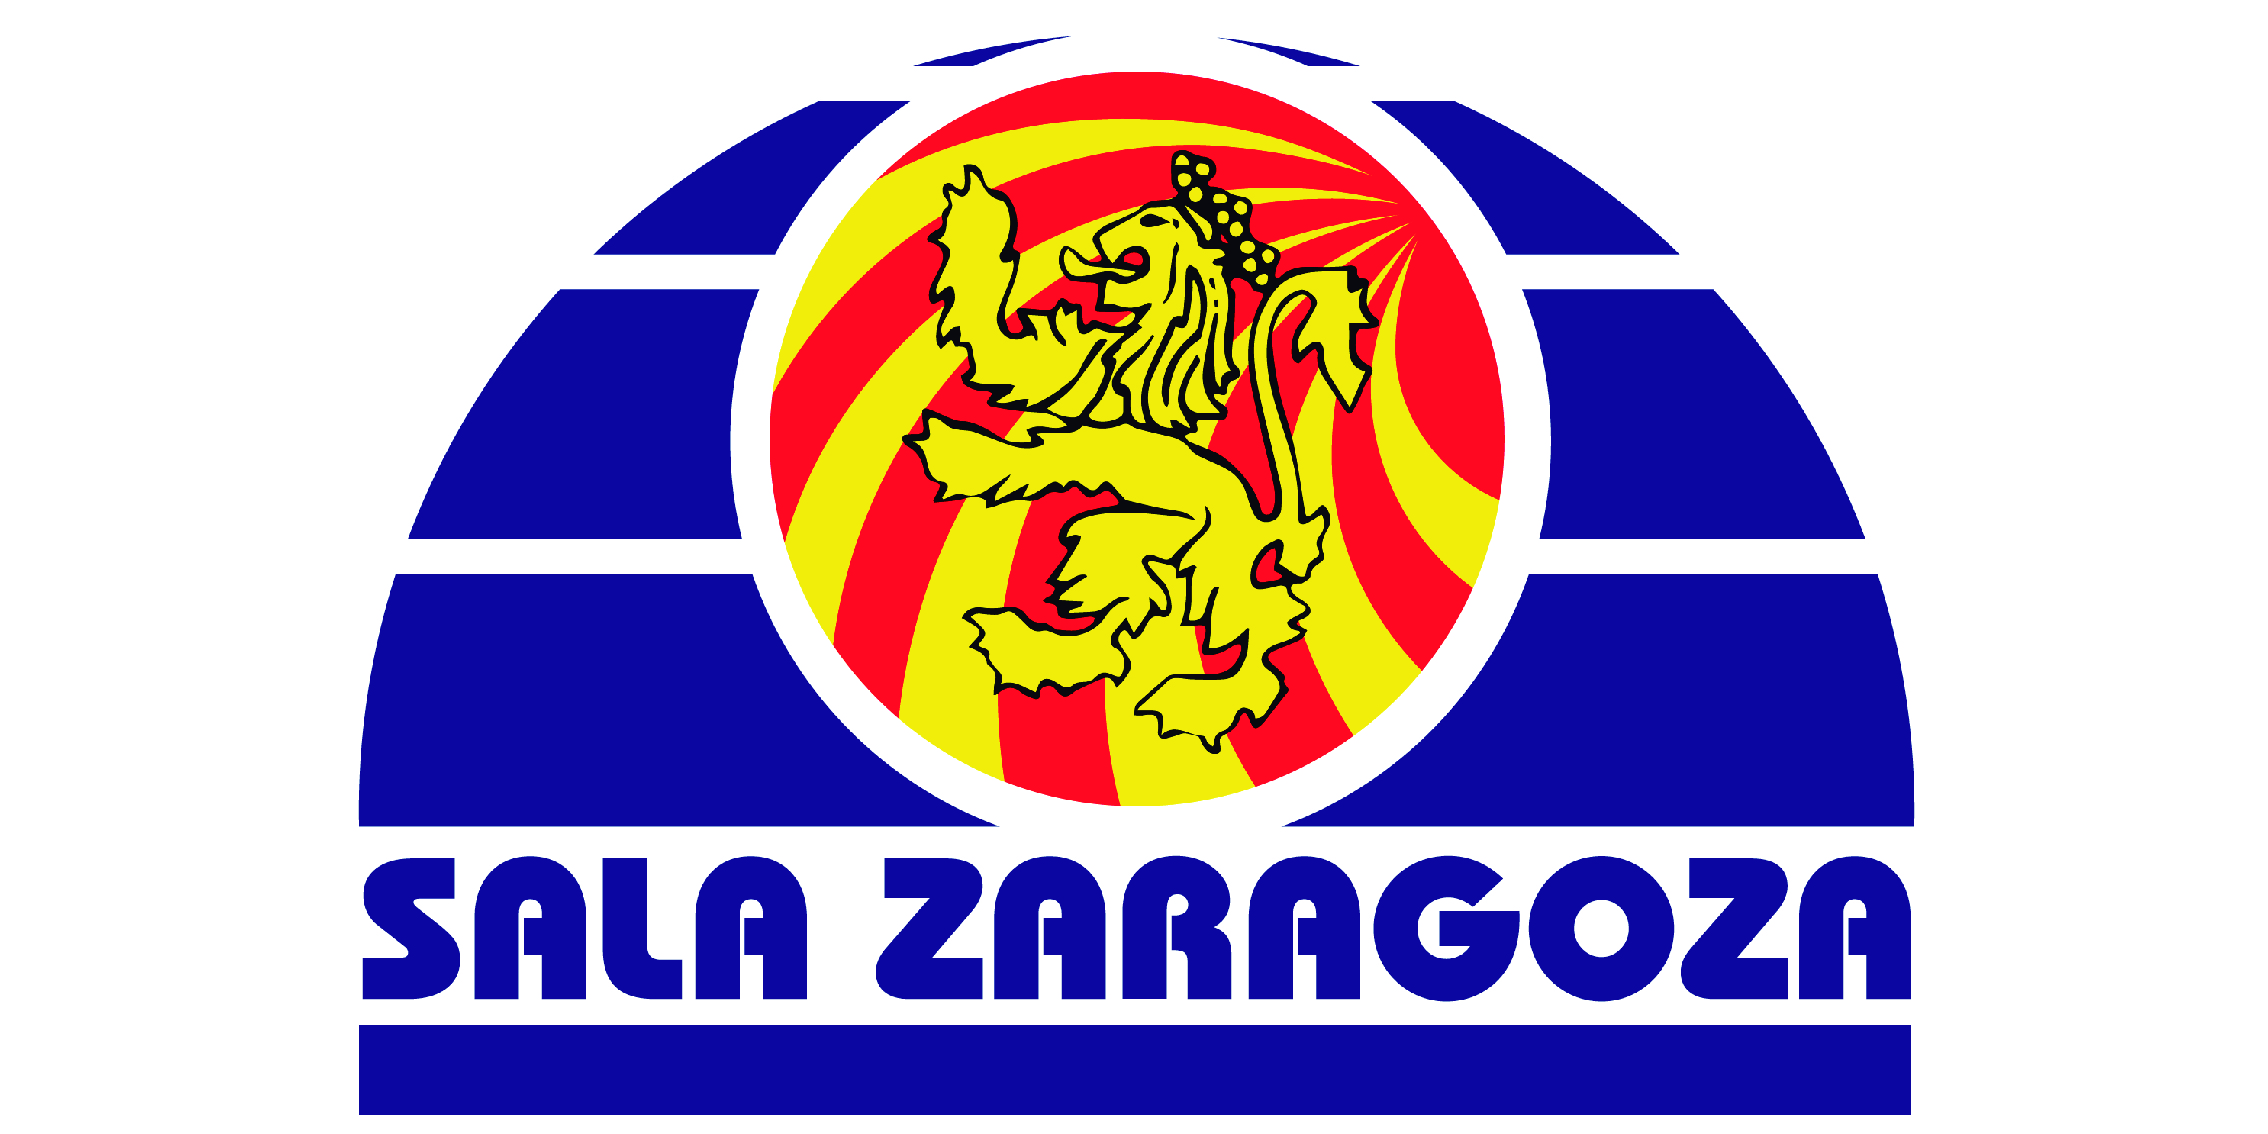 En este momento estás viendo Sala Zaragoza y Podoactiva, comenzamos a caminar juntos.